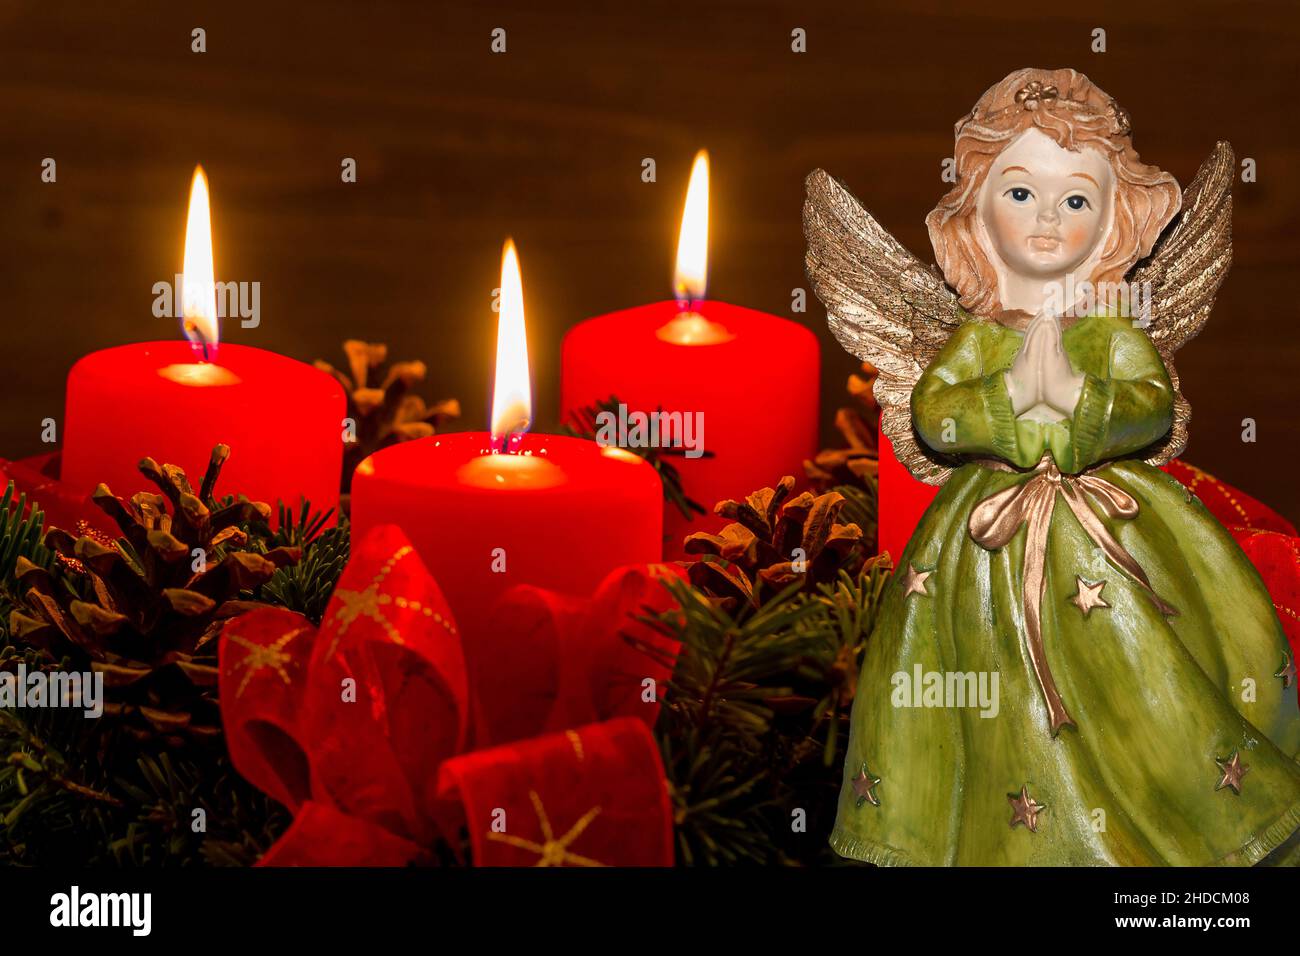 Ein Adventskranz zu Weihnachten sorgt für romatinsche Stimmung in der stillen Advent Zeit. 3 brennende Kerzen, 3. Advent, Engel, Weihnachtsengel, Stock Photo